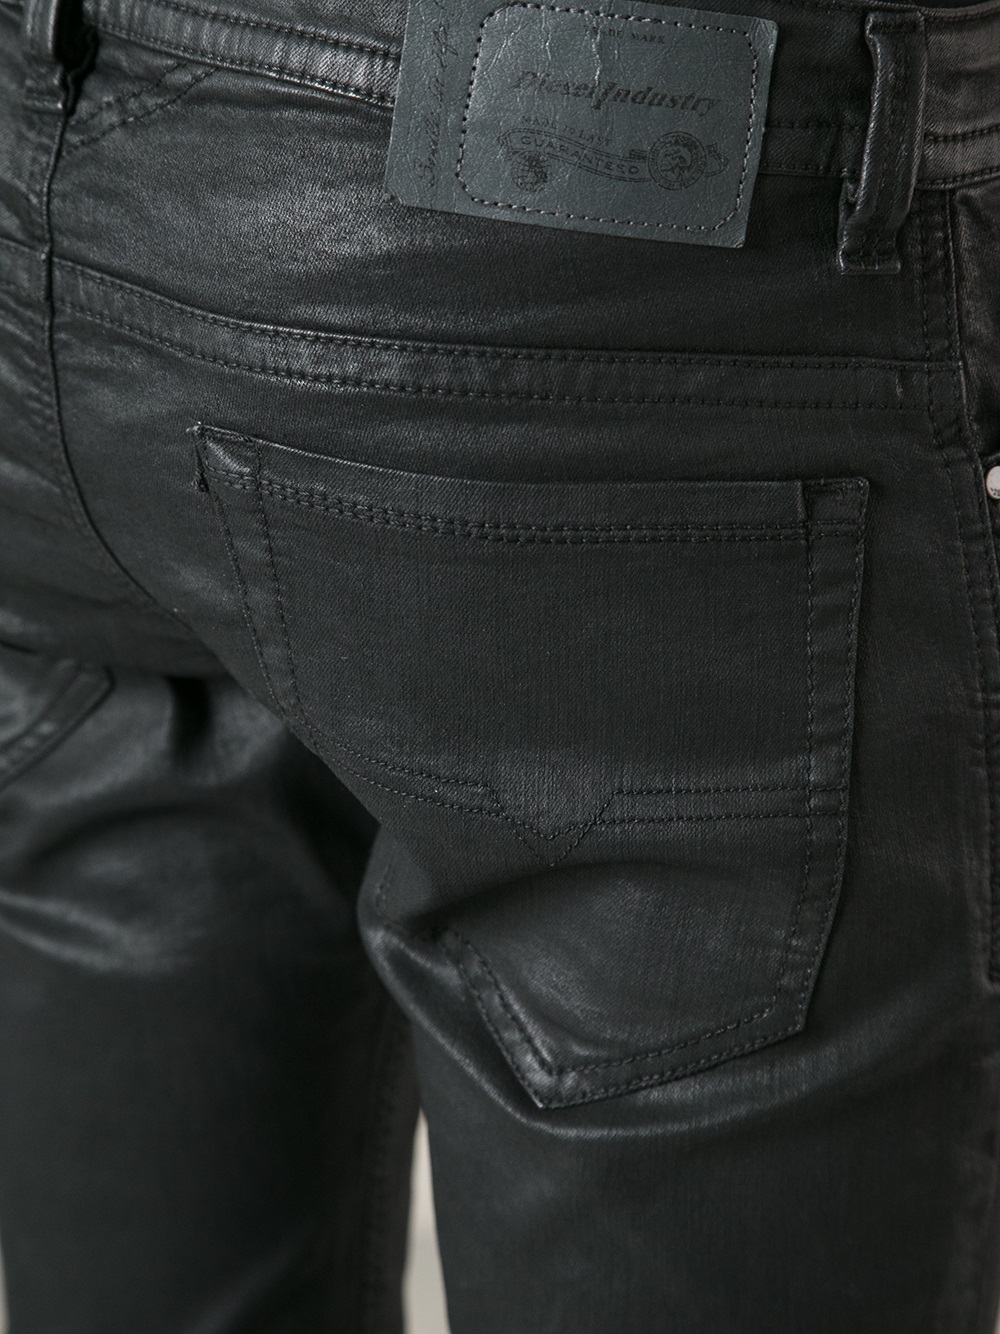 Lyst - Diesel Waxed Denim Jeans in Black for Men